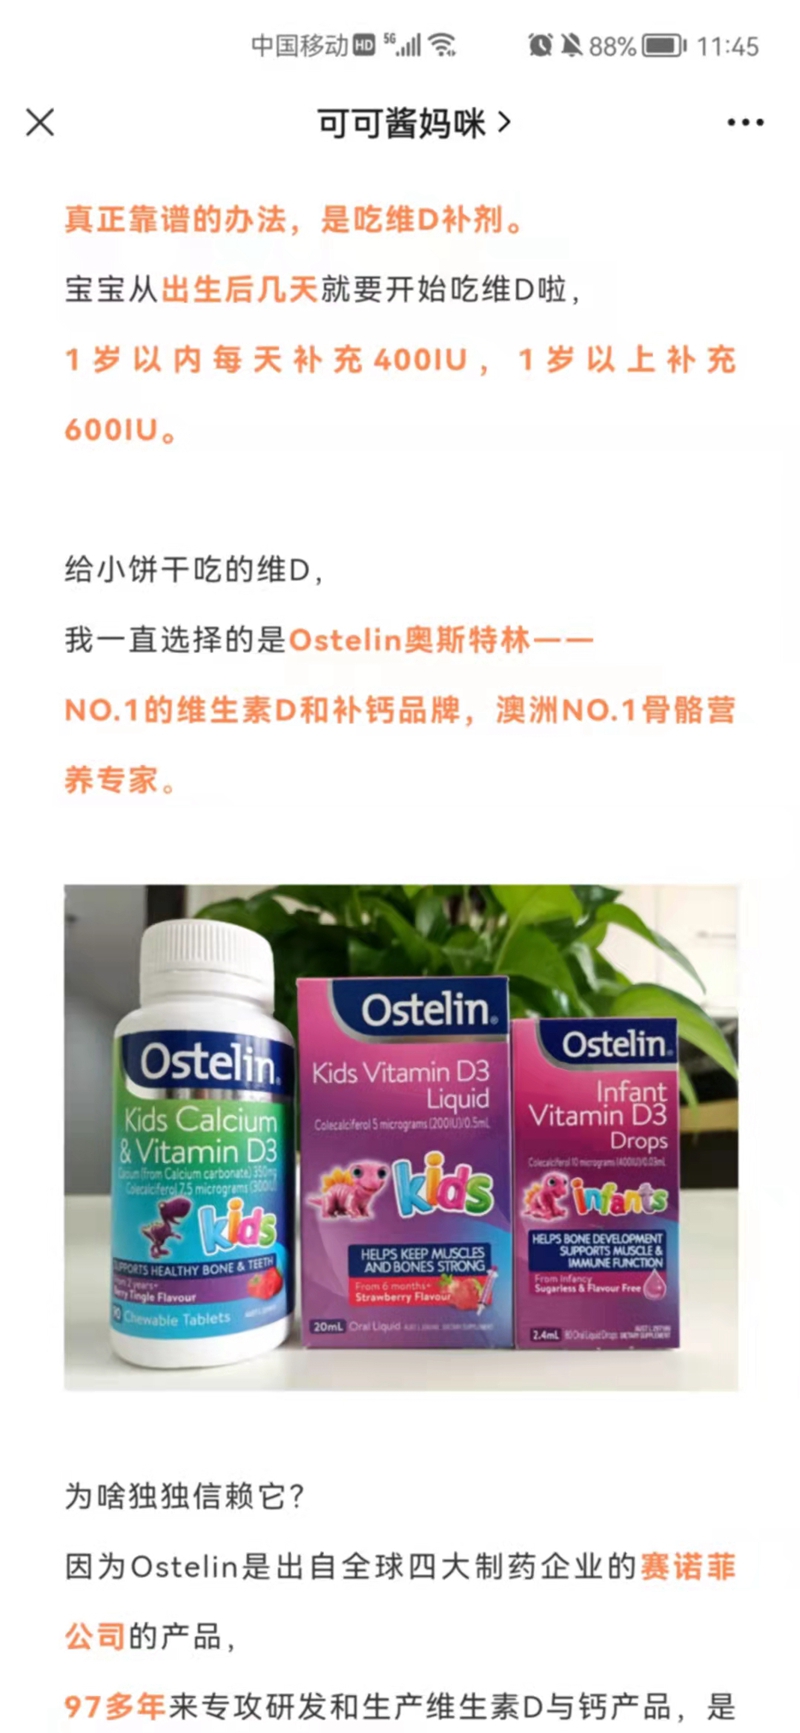 Ostelin奥斯特林维生素D 微信新营销 第1张